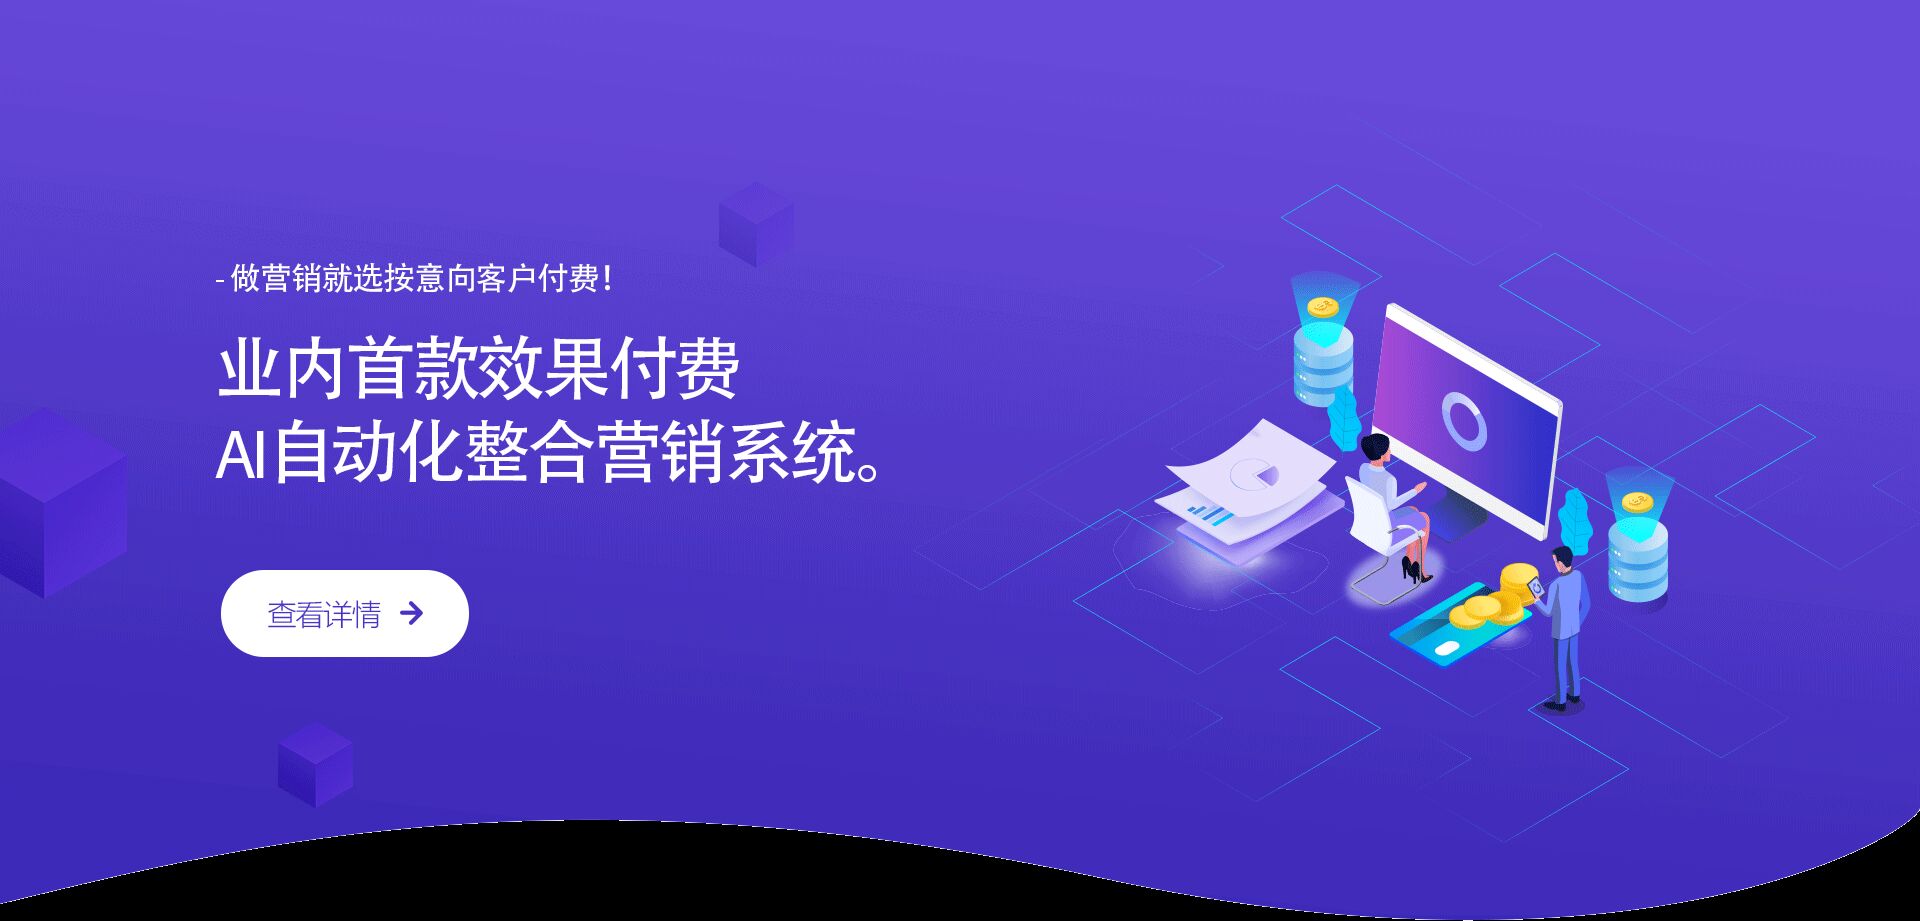 获得精准客户_大数据商务服务方法-上海琥源科技有限公司